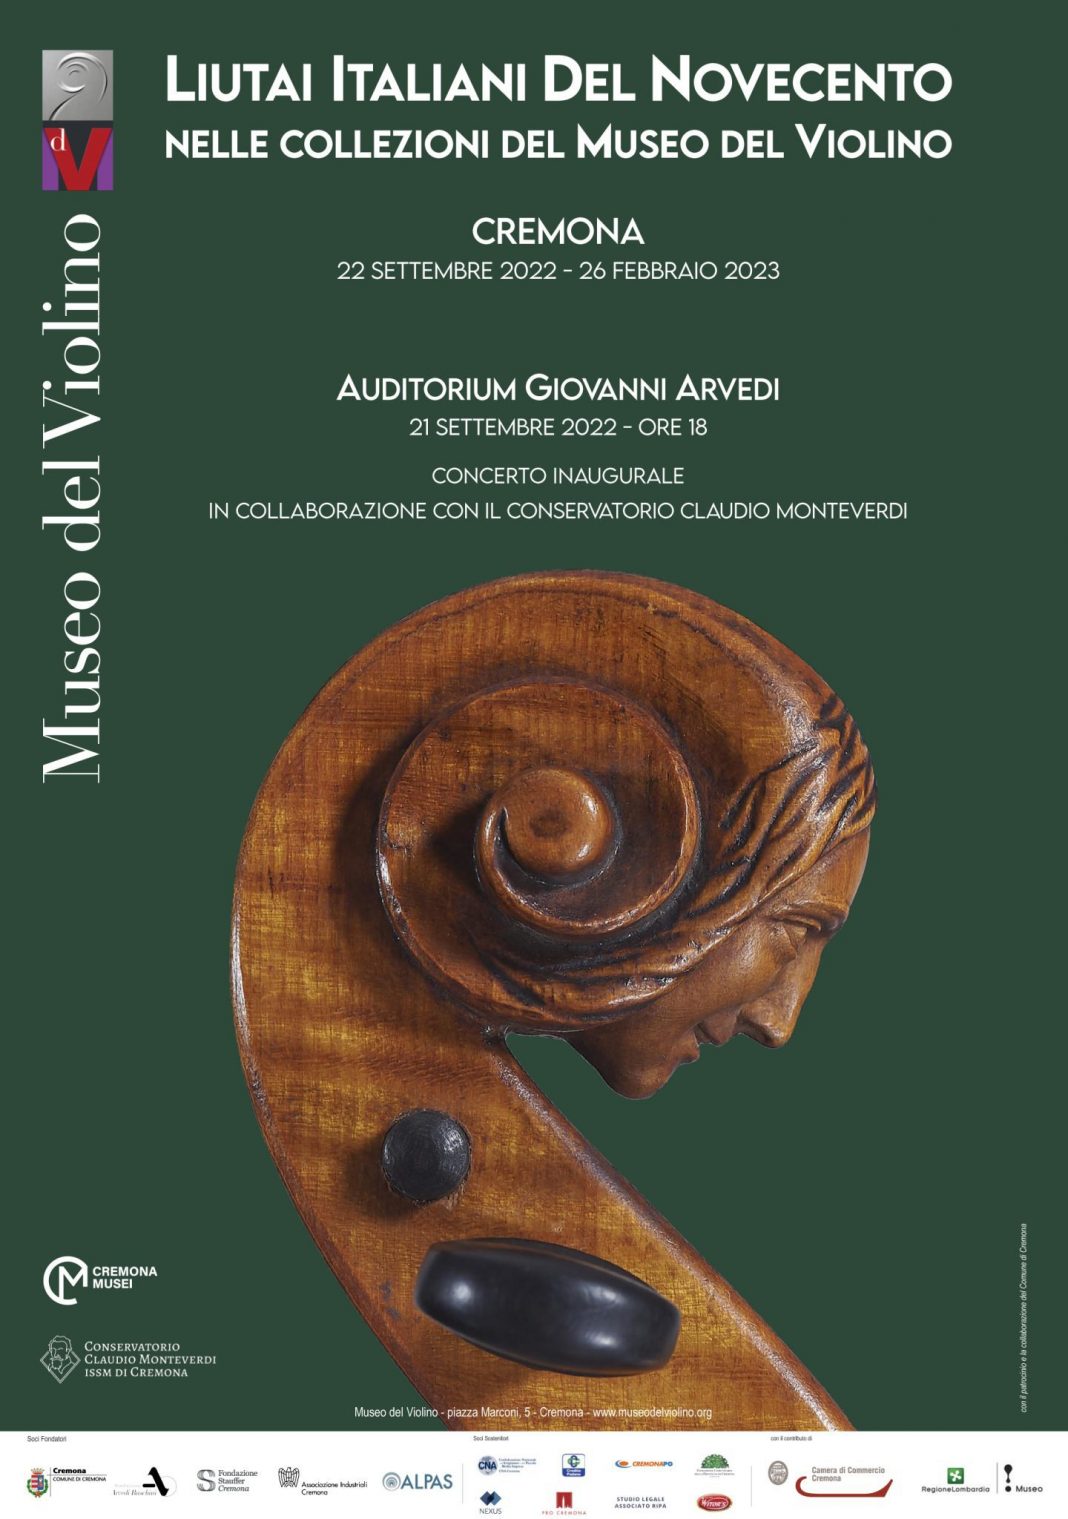 Liutai Italiani del Novecento nelle Collezioni del Museo del Violinohttps://www.exibart.com/repository/media/formidable/11/img/ec3/70_100_liutai_del_Novecento-1440x2048-1068x1519.jpg